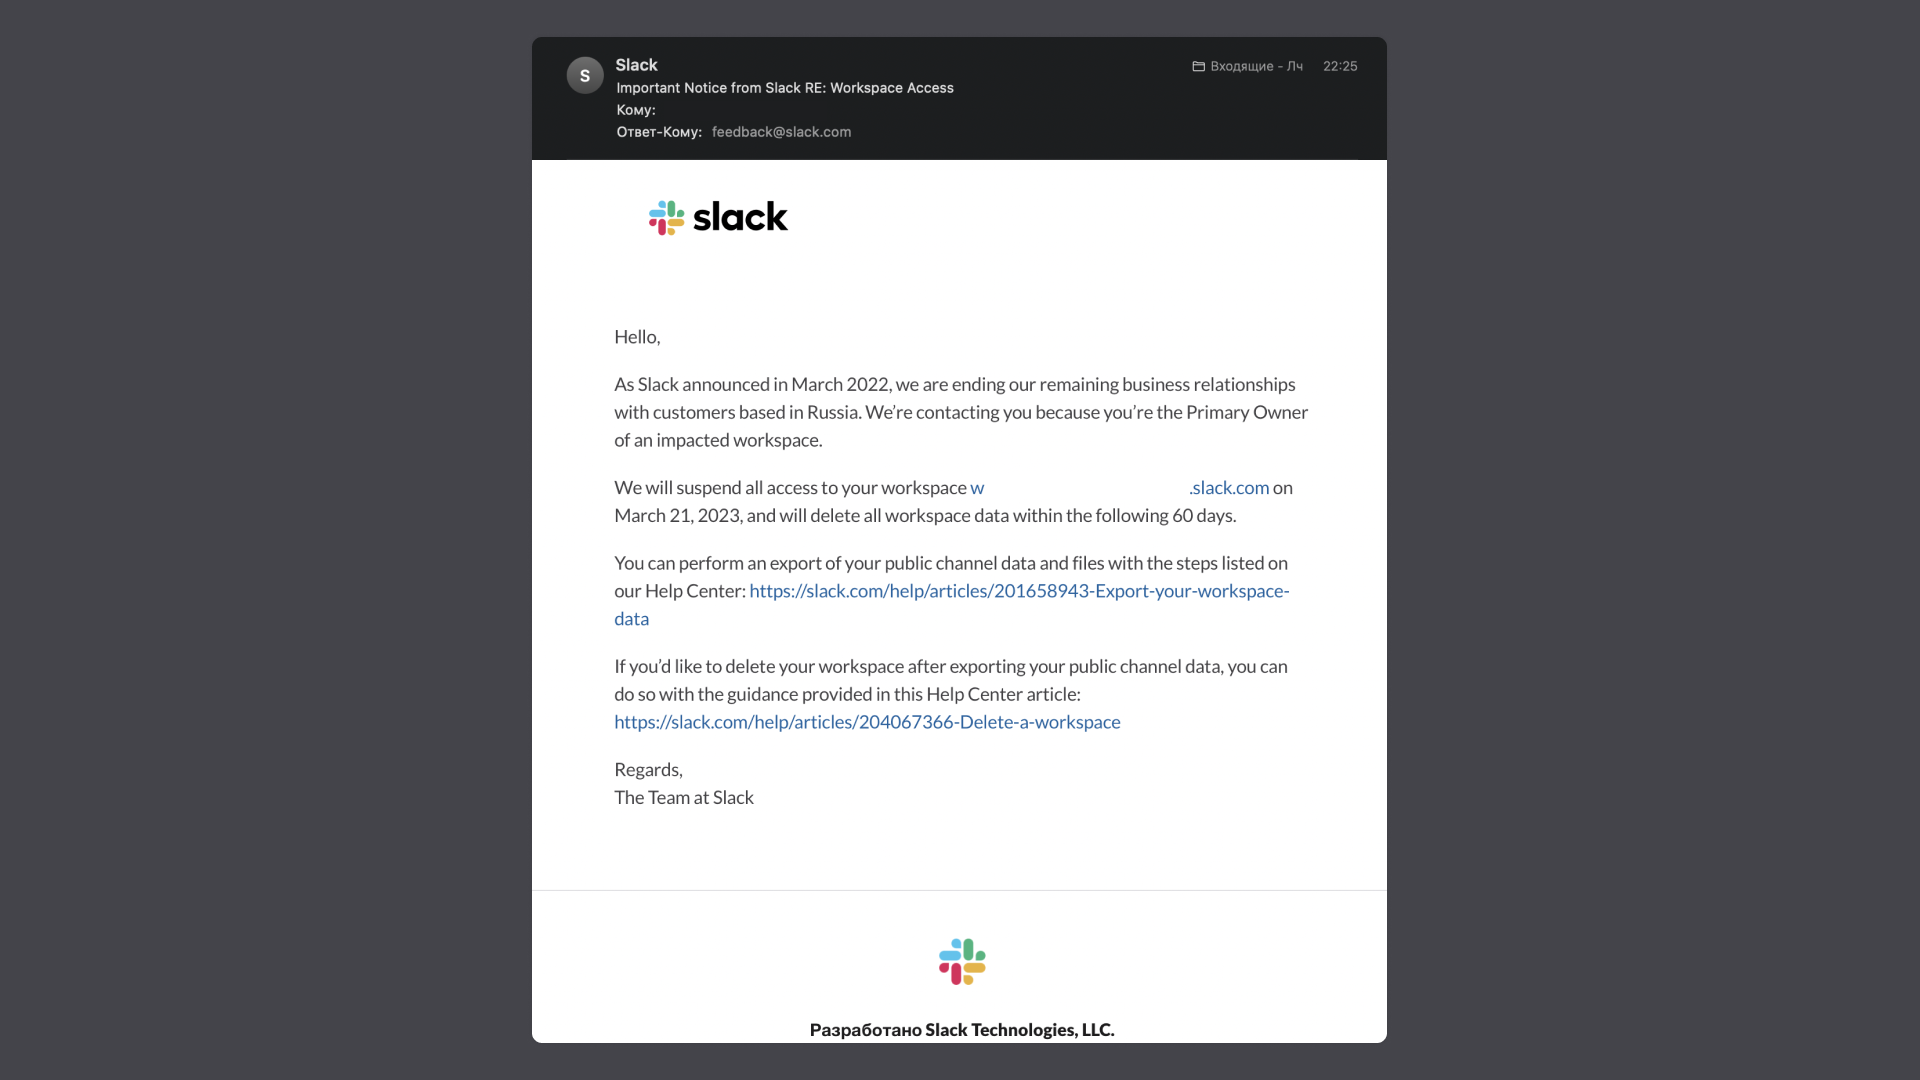 В первом письме Slack предупреждает, что заблокирует доступ к пространству 21 марта, т.к. год назад объявил о прекращении отношений с пользователями из России. Также упоминается, что вся информация из рабочего пространства будет удалена через 60 дней после блокировки.